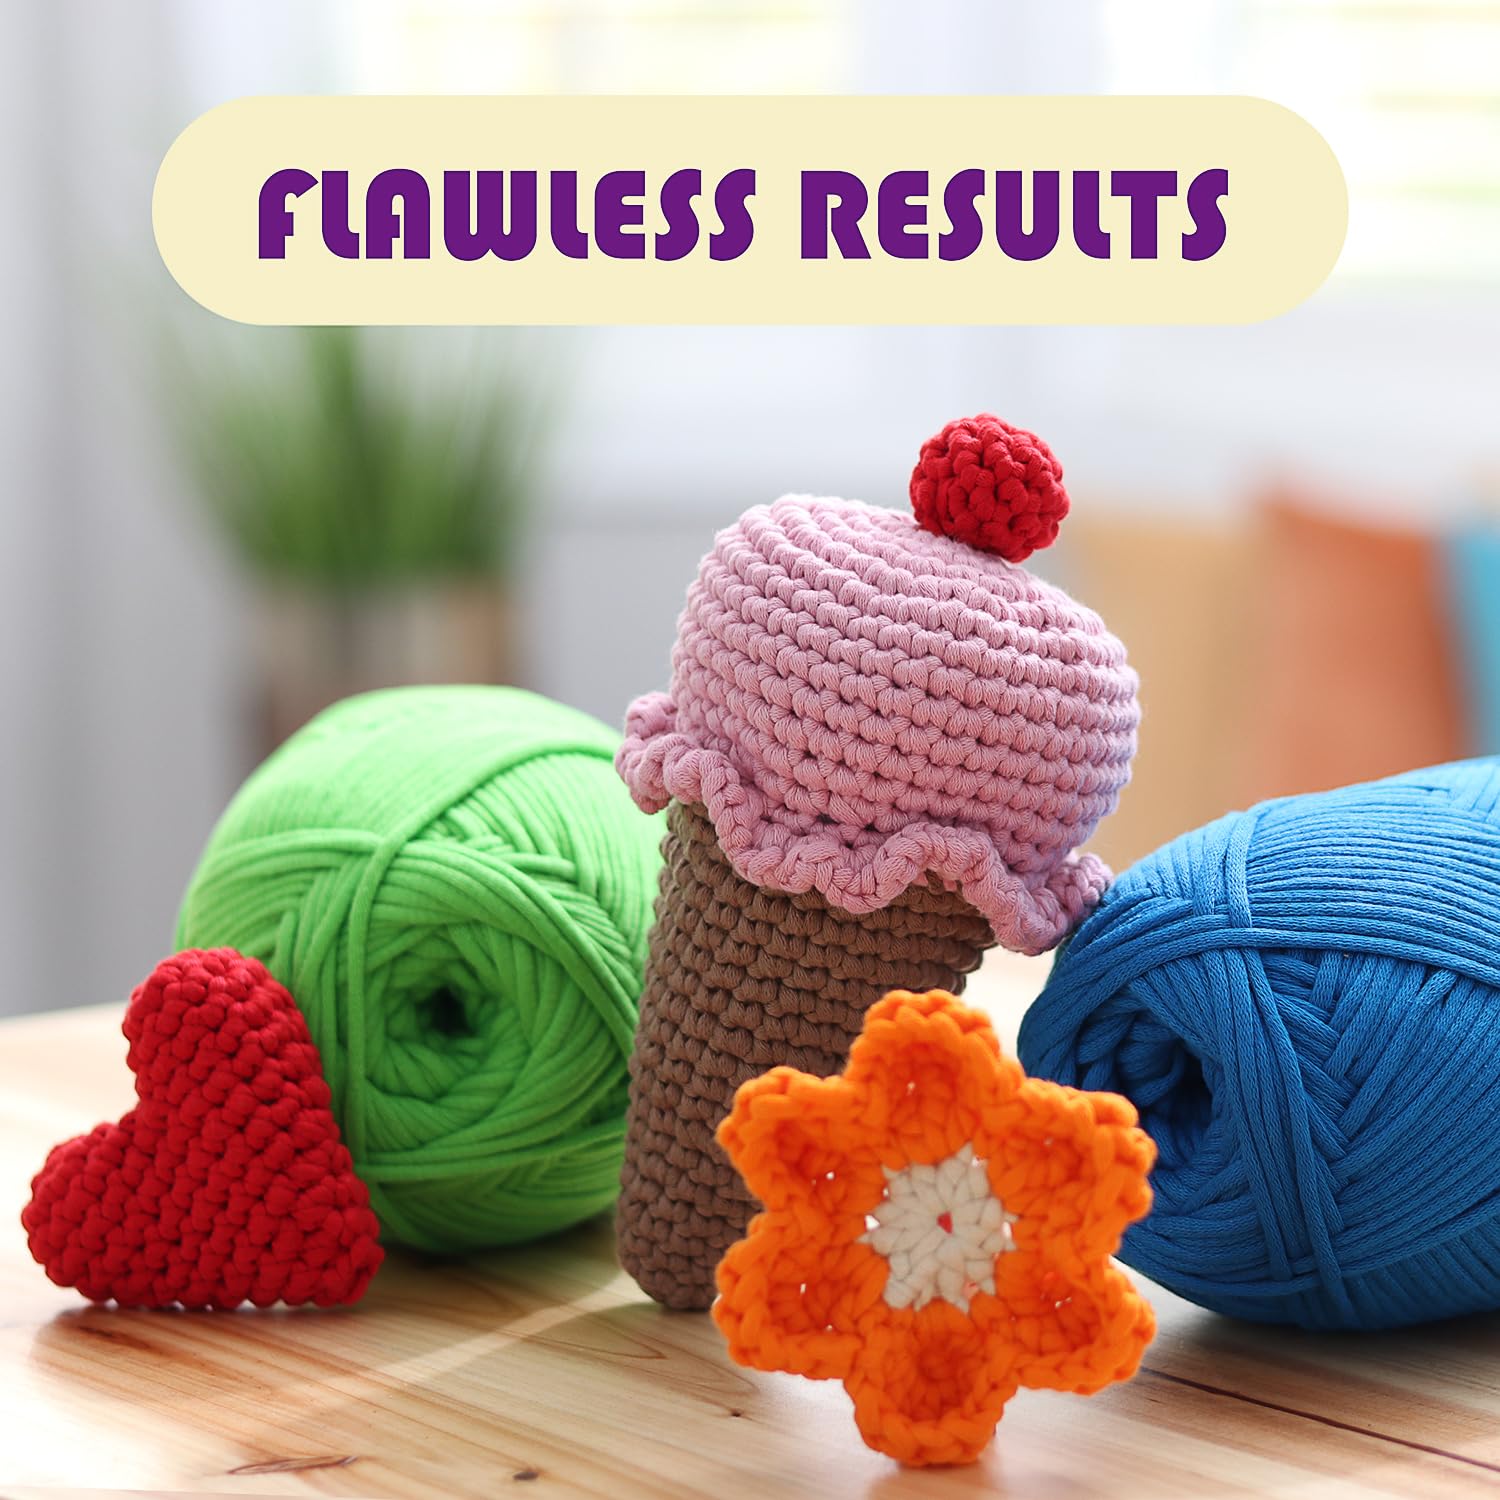 Soft Yarn for Crocheting – Crochet & Knitting Yarn, Beginner Yarn with Easy-to-See Stitches, 12 x 50g - 1200 Yards Amigurumi Yarn, Cotton-Nylon Blend Tshirt Yarn for Crocheting, Worsted Weight Yarn 4